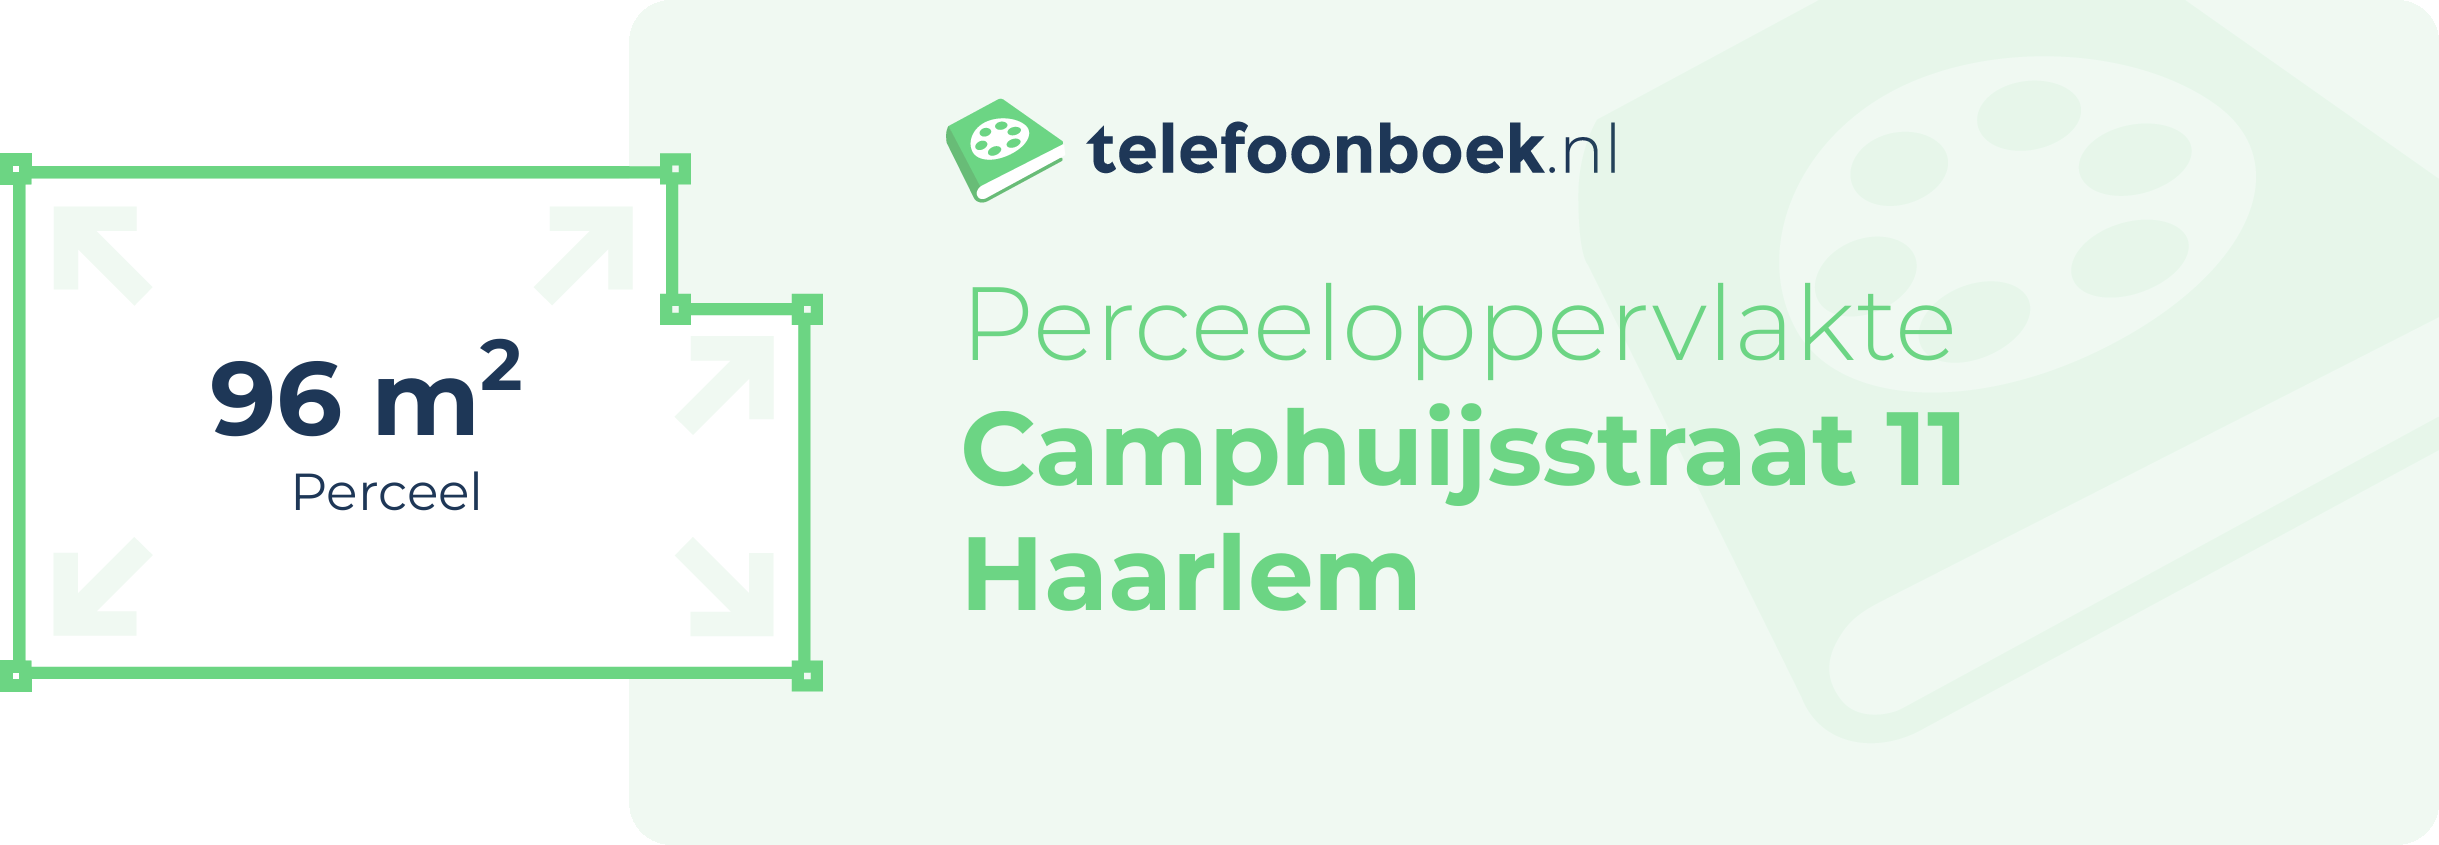 Perceeloppervlakte Camphuijsstraat 11 Haarlem